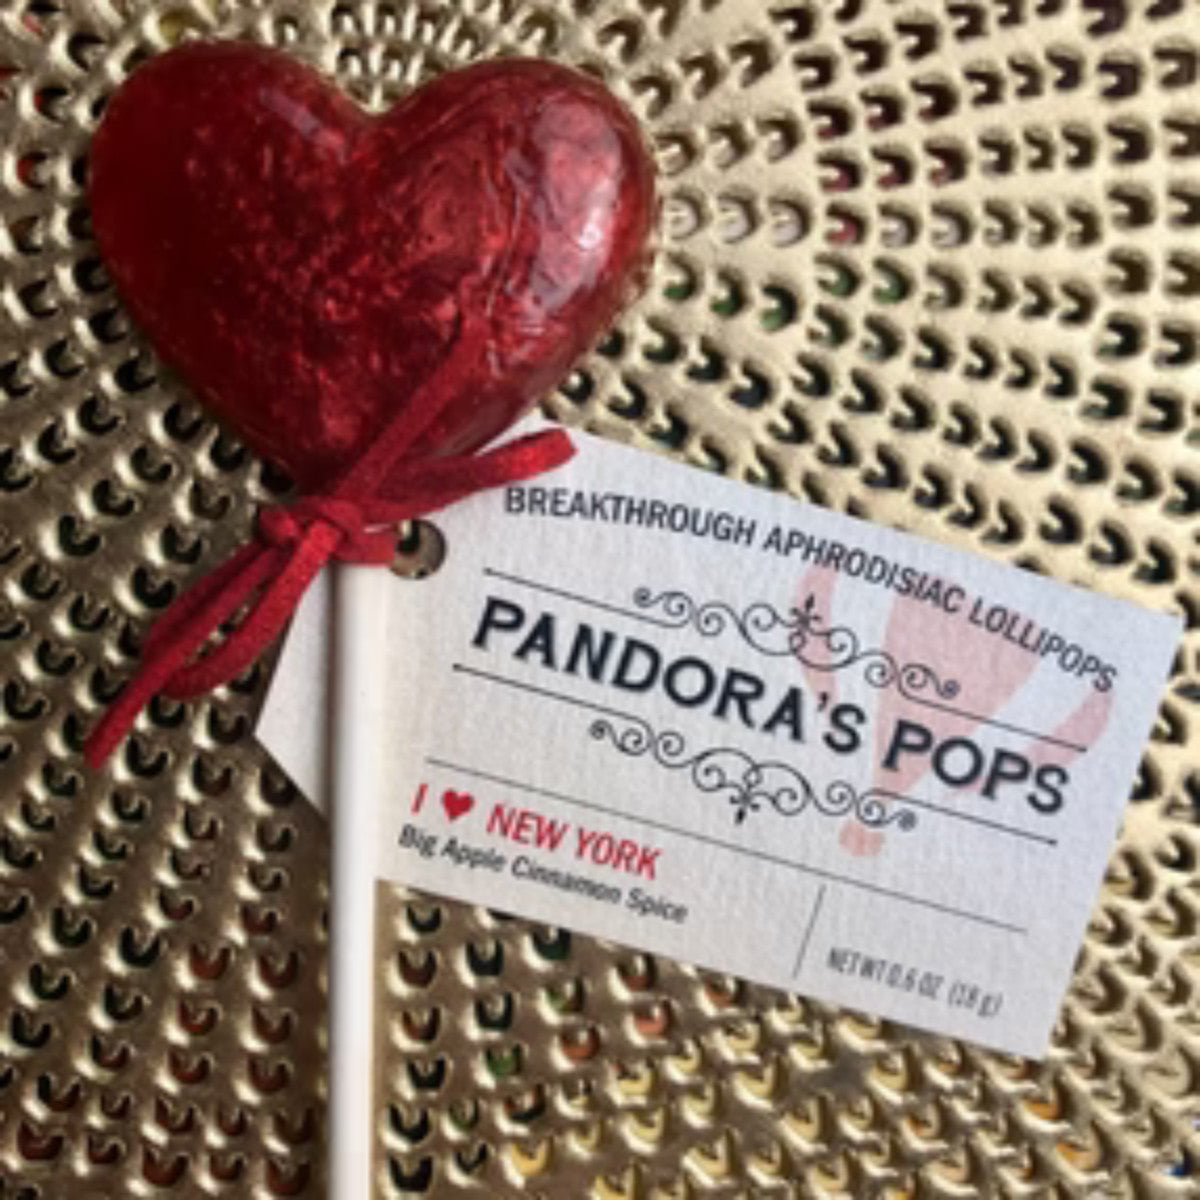 Pandora's Pops